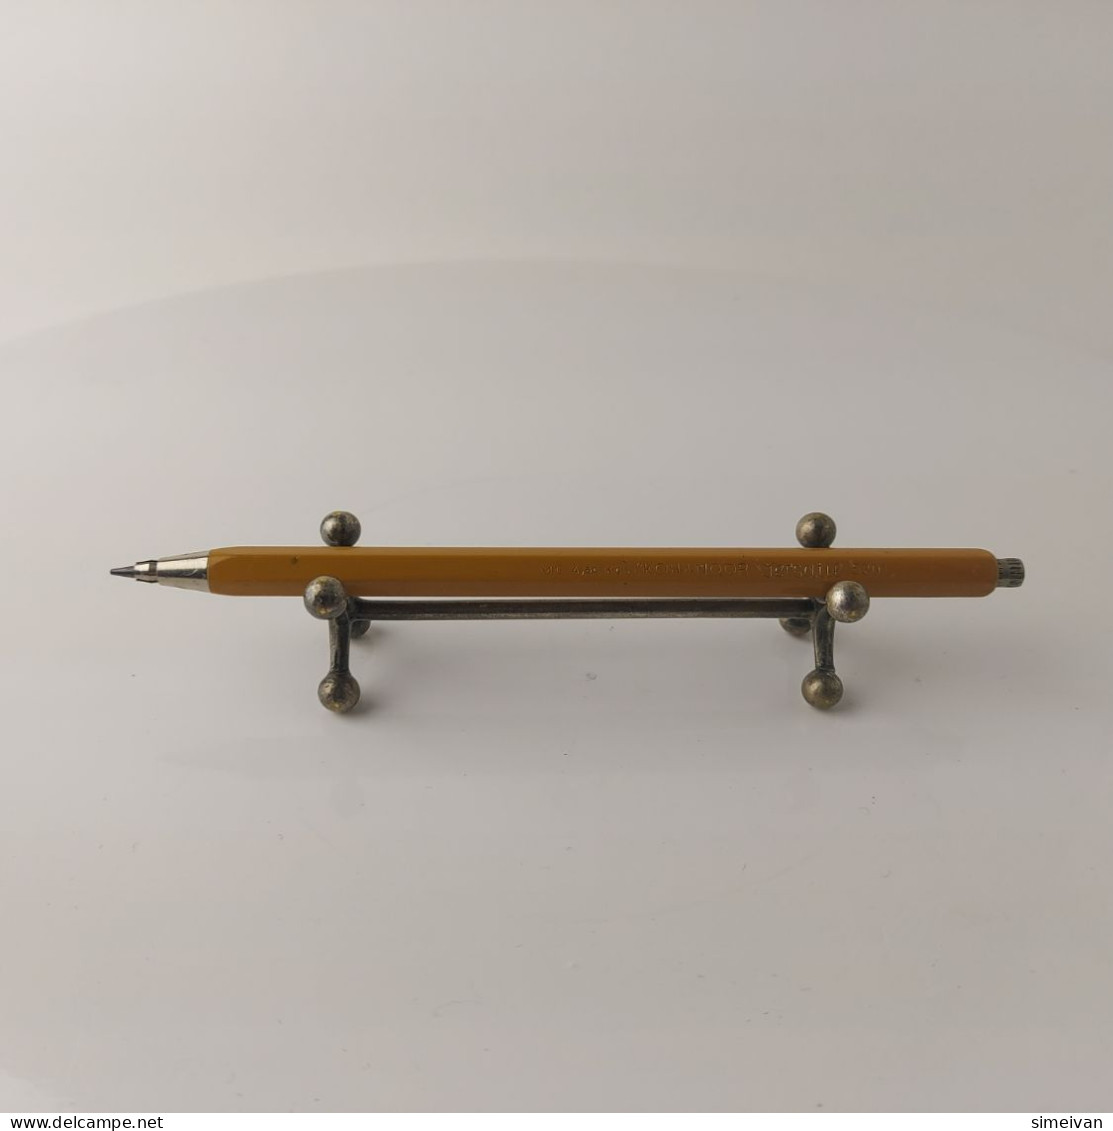 Vintage Mechanical Pencil 2mm KOH-I-NOOR Versatil 5201 Metal #5519 - Schreibgerät